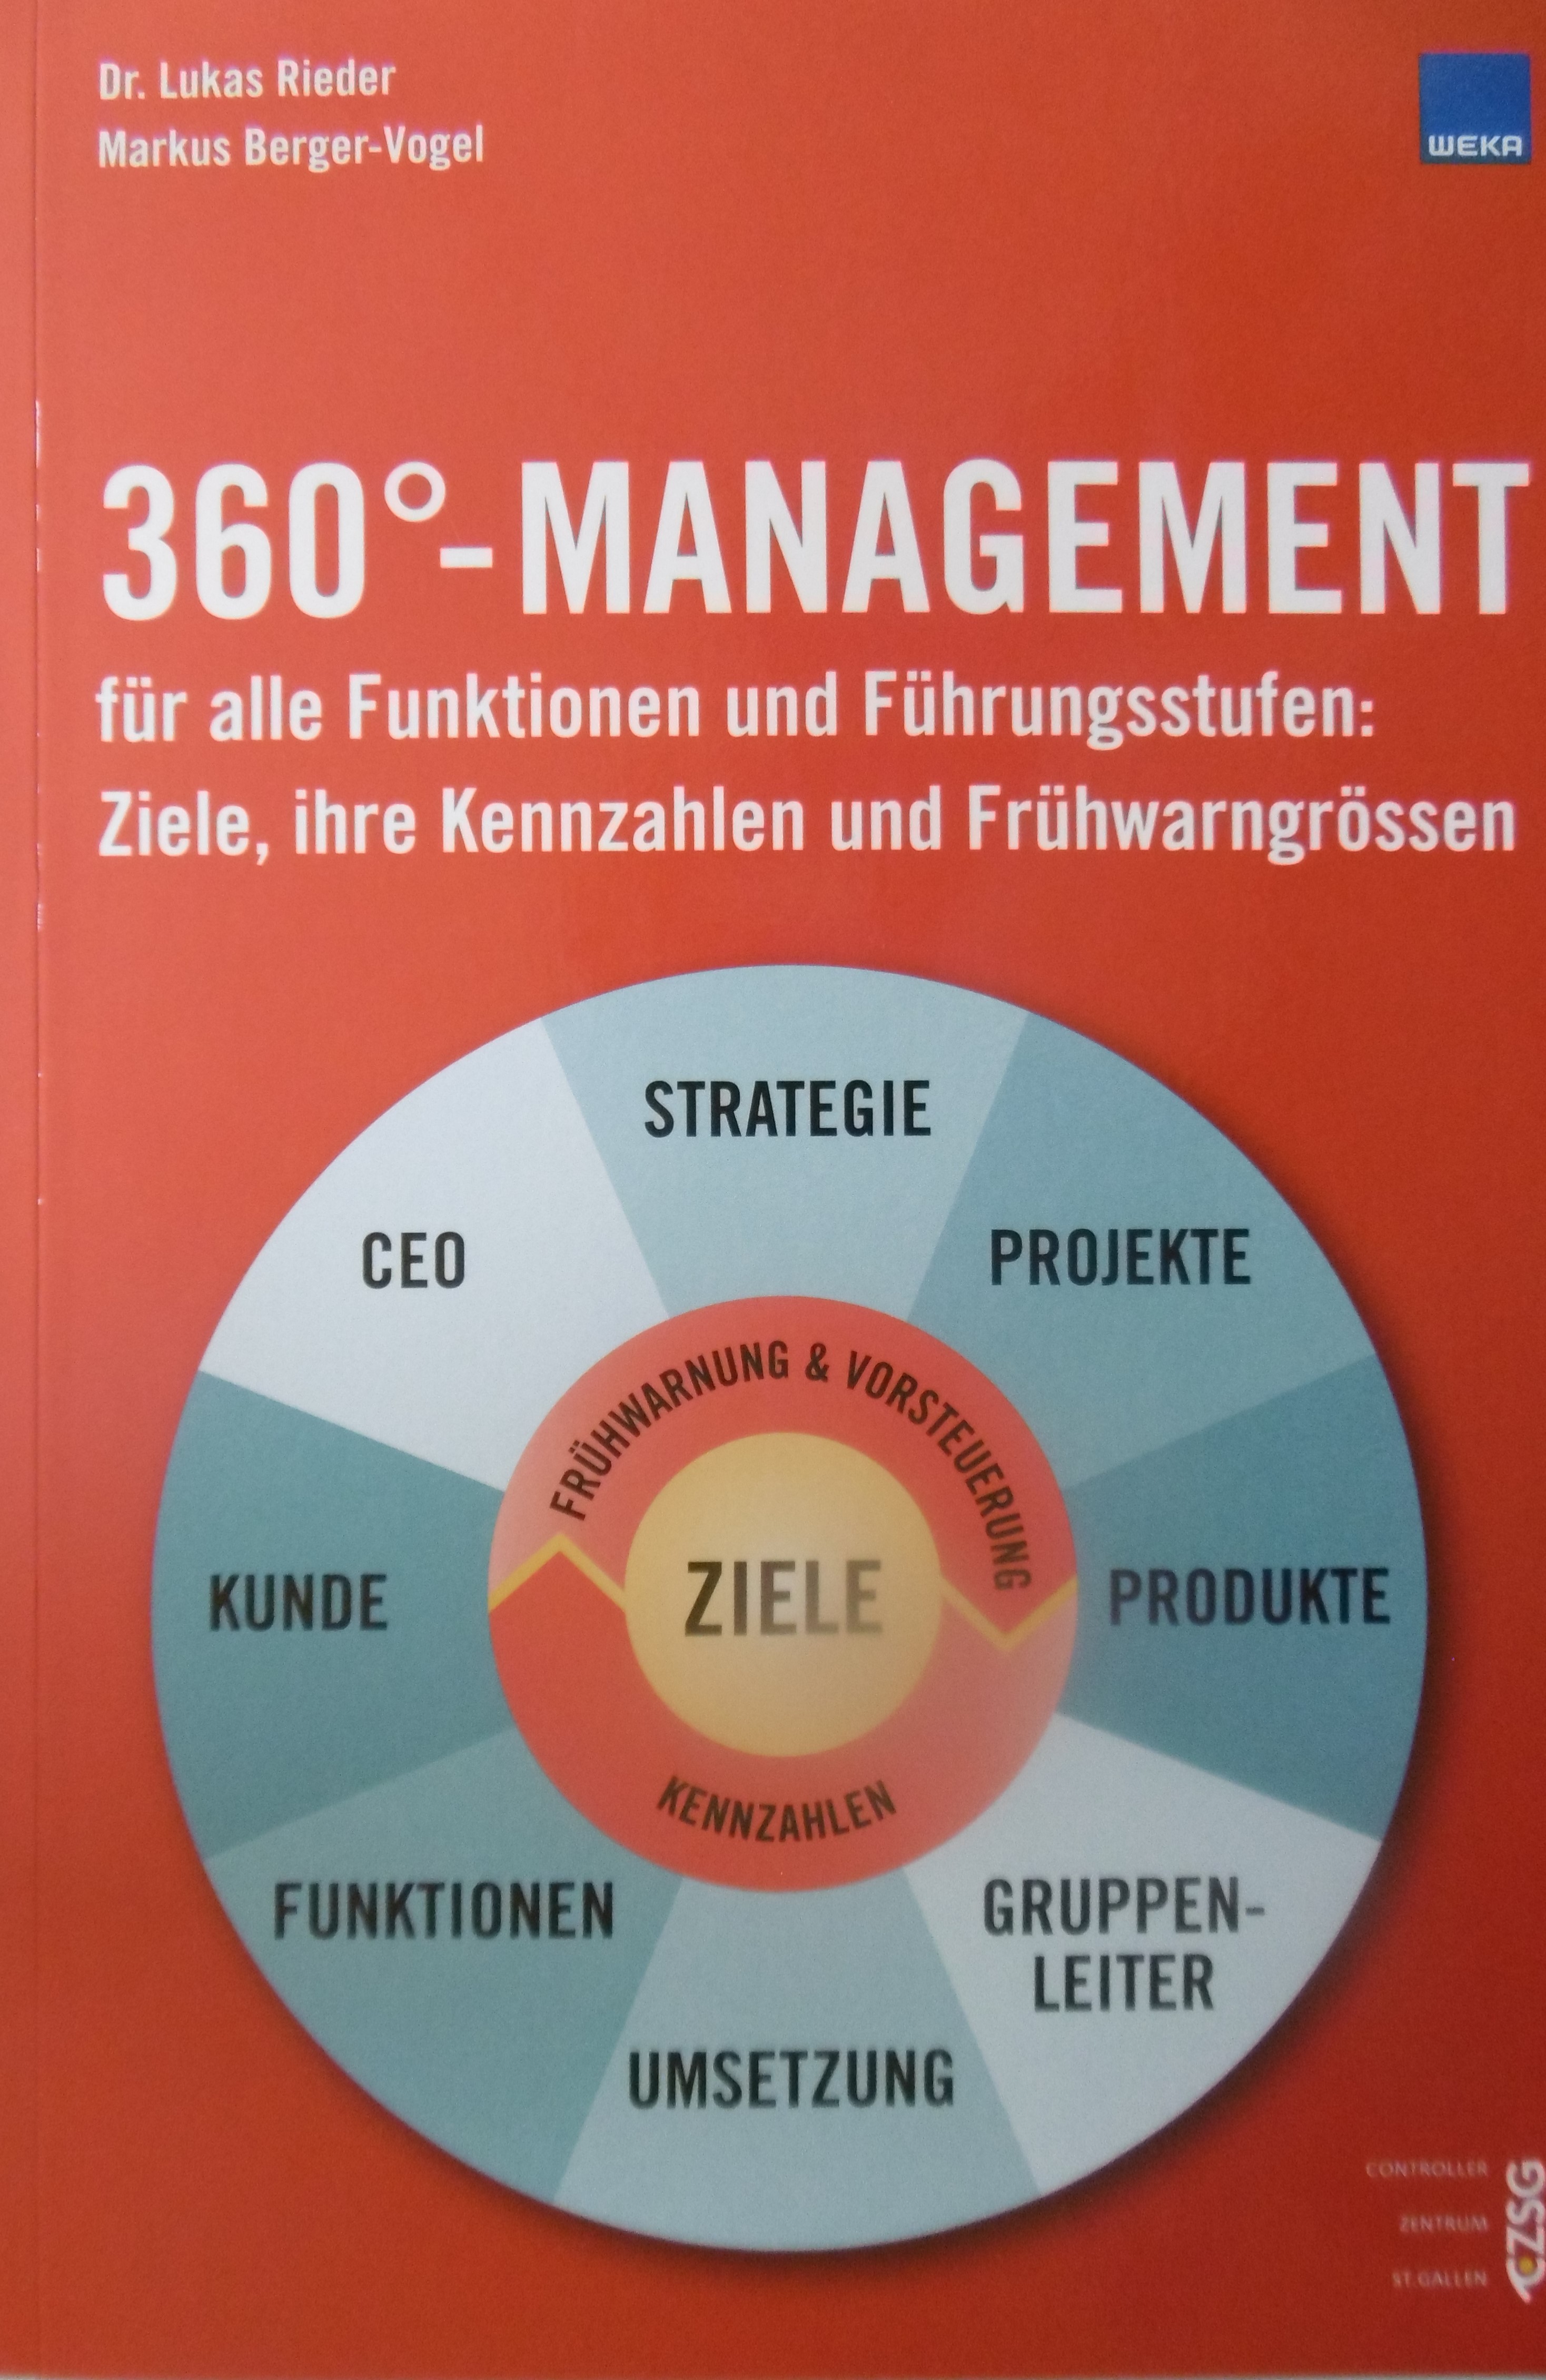 360°-Management (Print-Version) für alle Funktionen und Führungsstufen